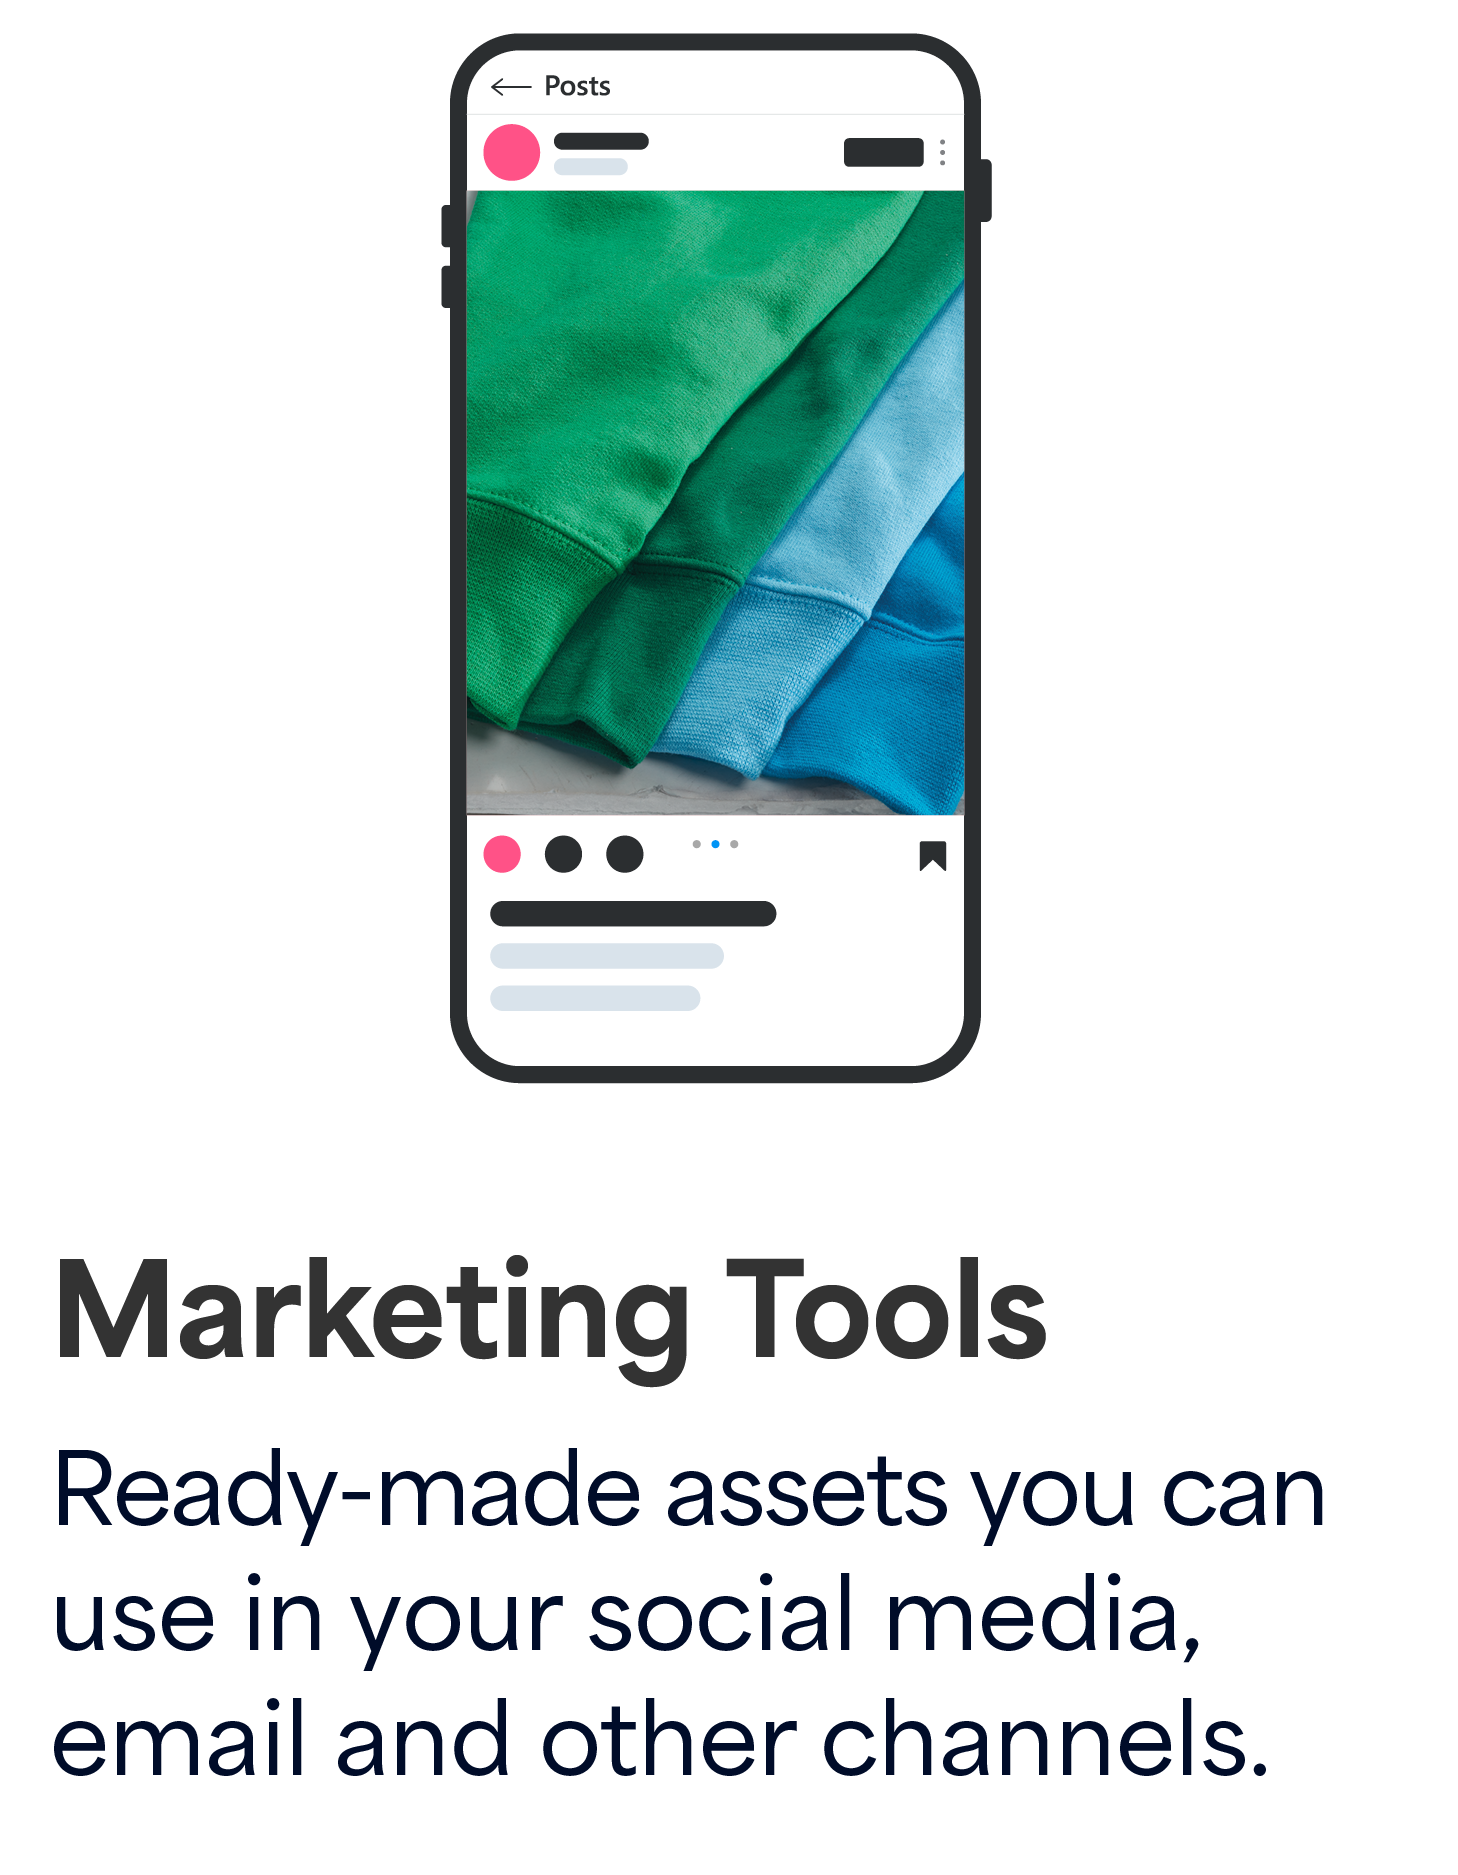 Explore Marketing Tools